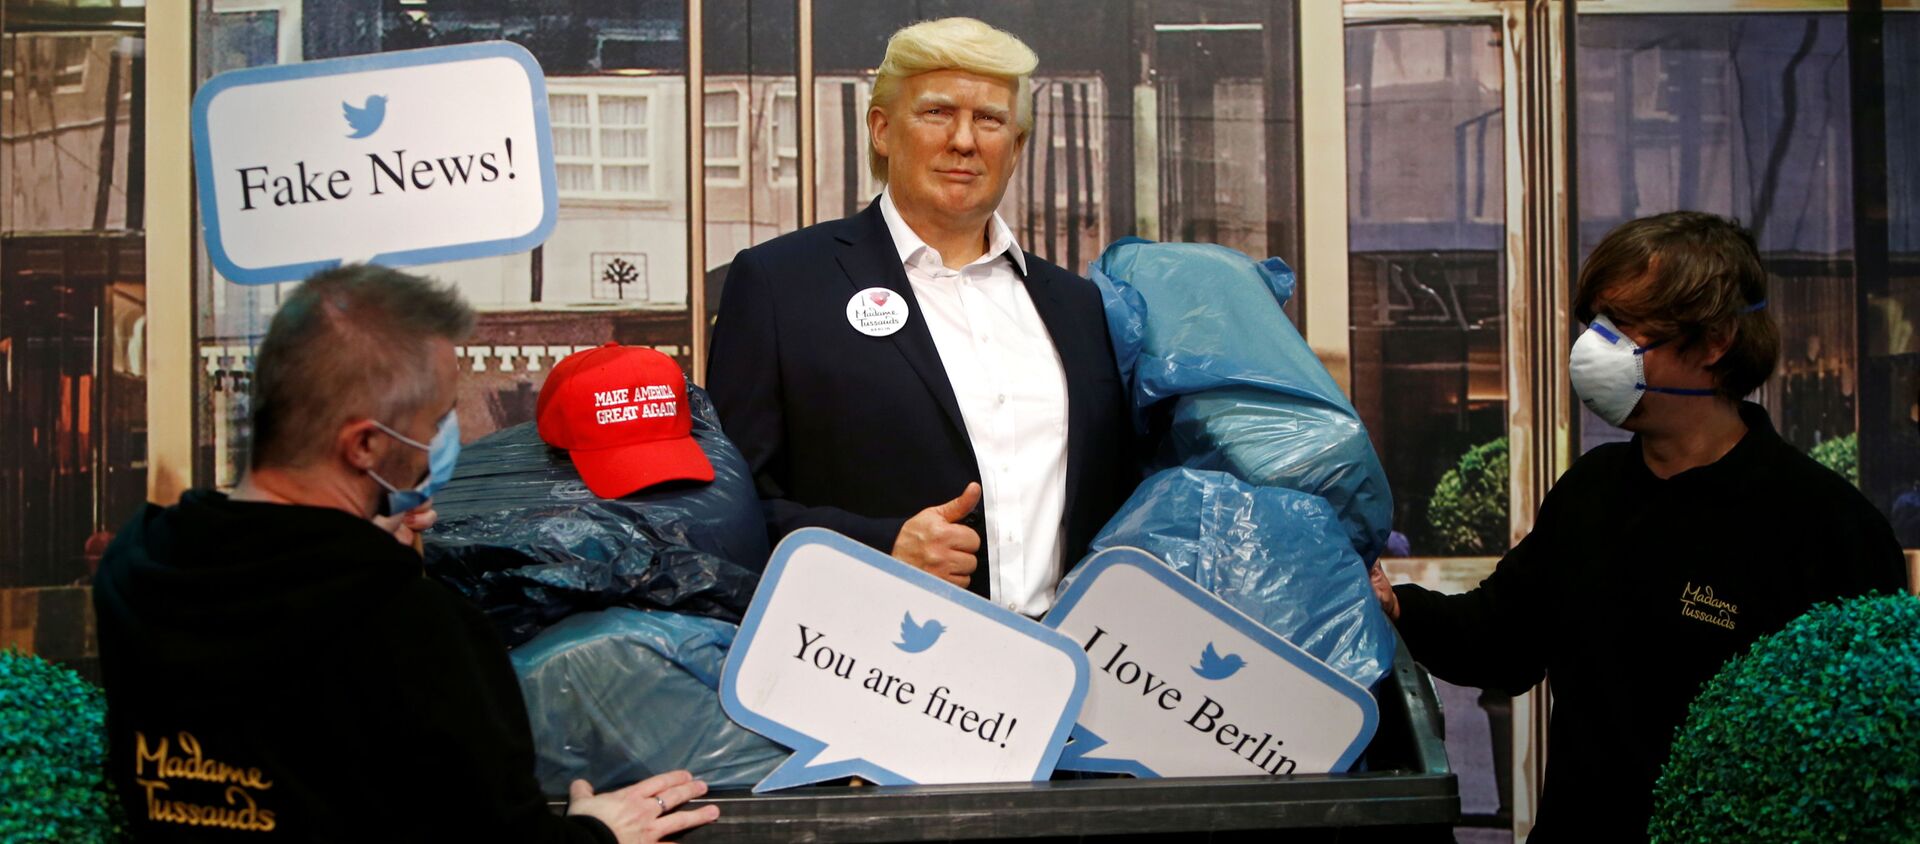 Tượng Tổng thống Mỹ Donald Trump trong thùng rác tại Bảo tàng tượng sáp Madame Tussaud ở Berlin. - Sputnik Việt Nam, 1920, 31.10.2020